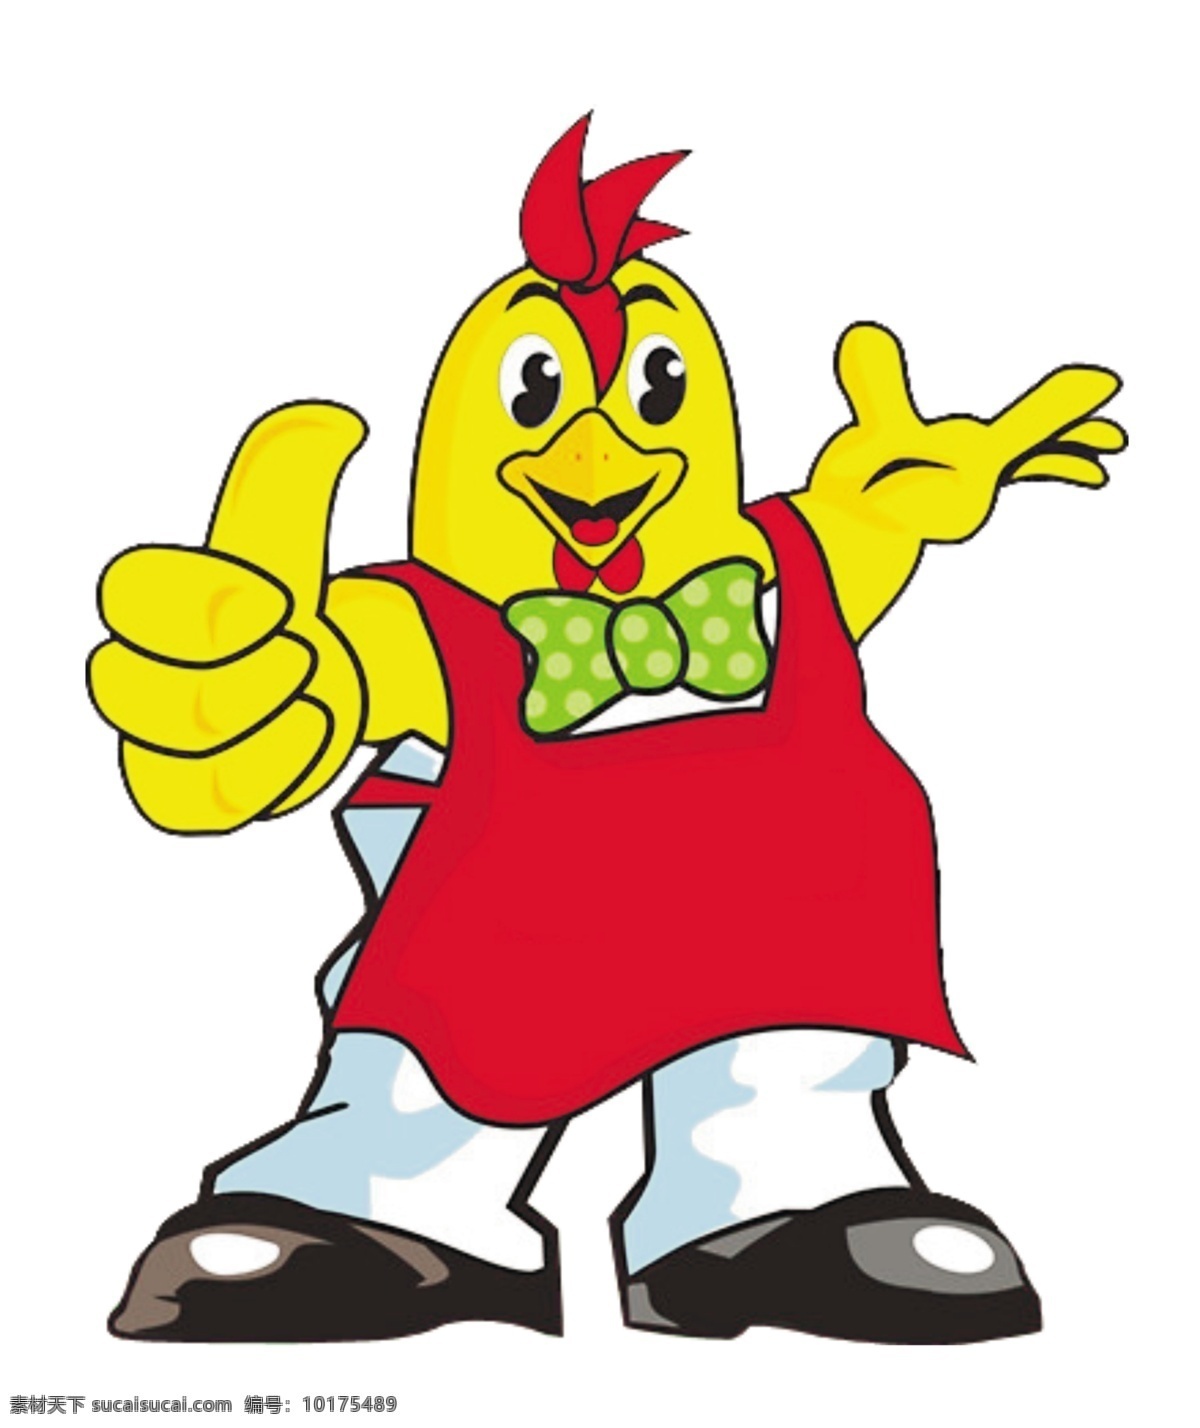 鸡 卡通 吉祥物 鸡精 好好味 鸡翅 厨师 汉堡鸡 大拇指 拇指 其他素材 其他图标 标志图标